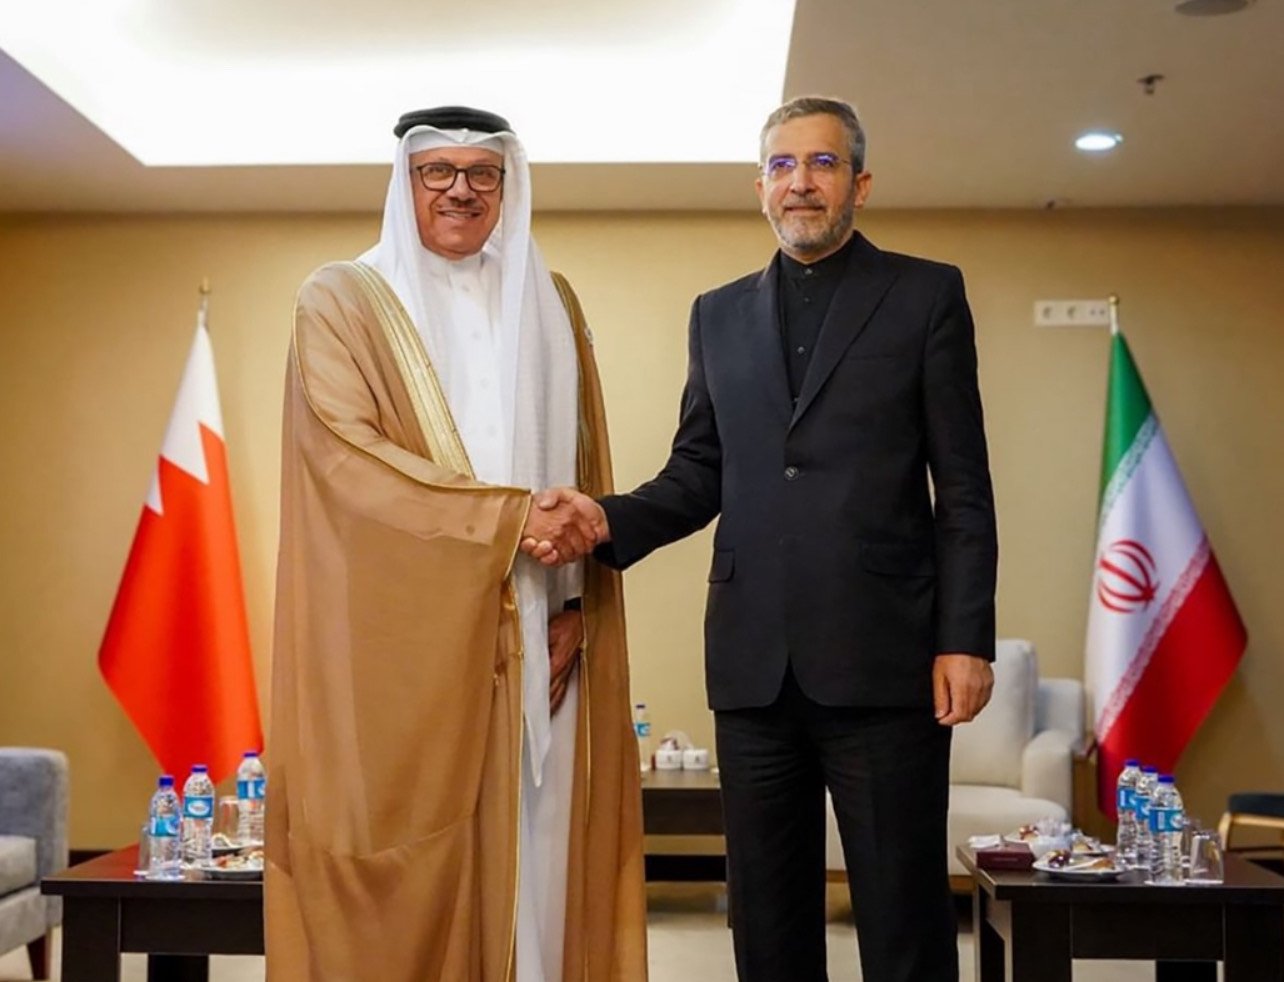 وزير الخارجية البحريني راشد الزياني لدى استقباله من طرف نظيره الايراني الدكتور علي باقري كنيفي طهران